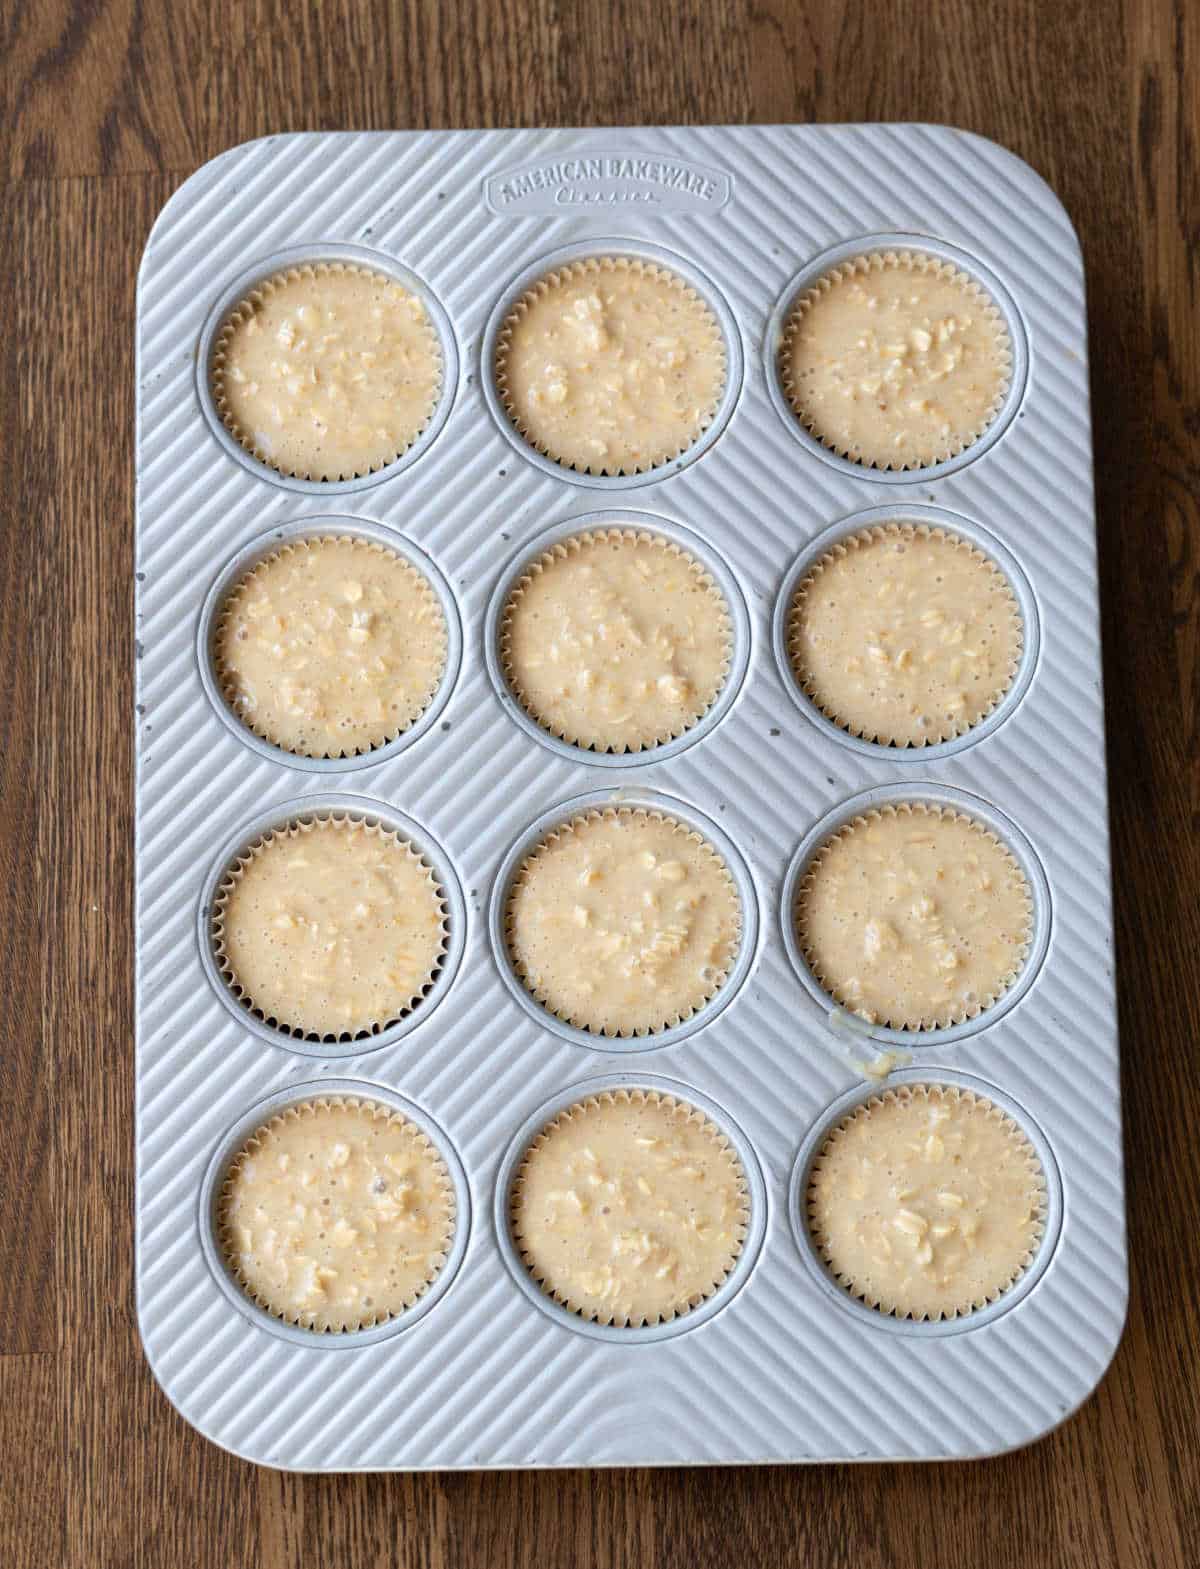 Oatmeal muffin batter in a muffin tin.